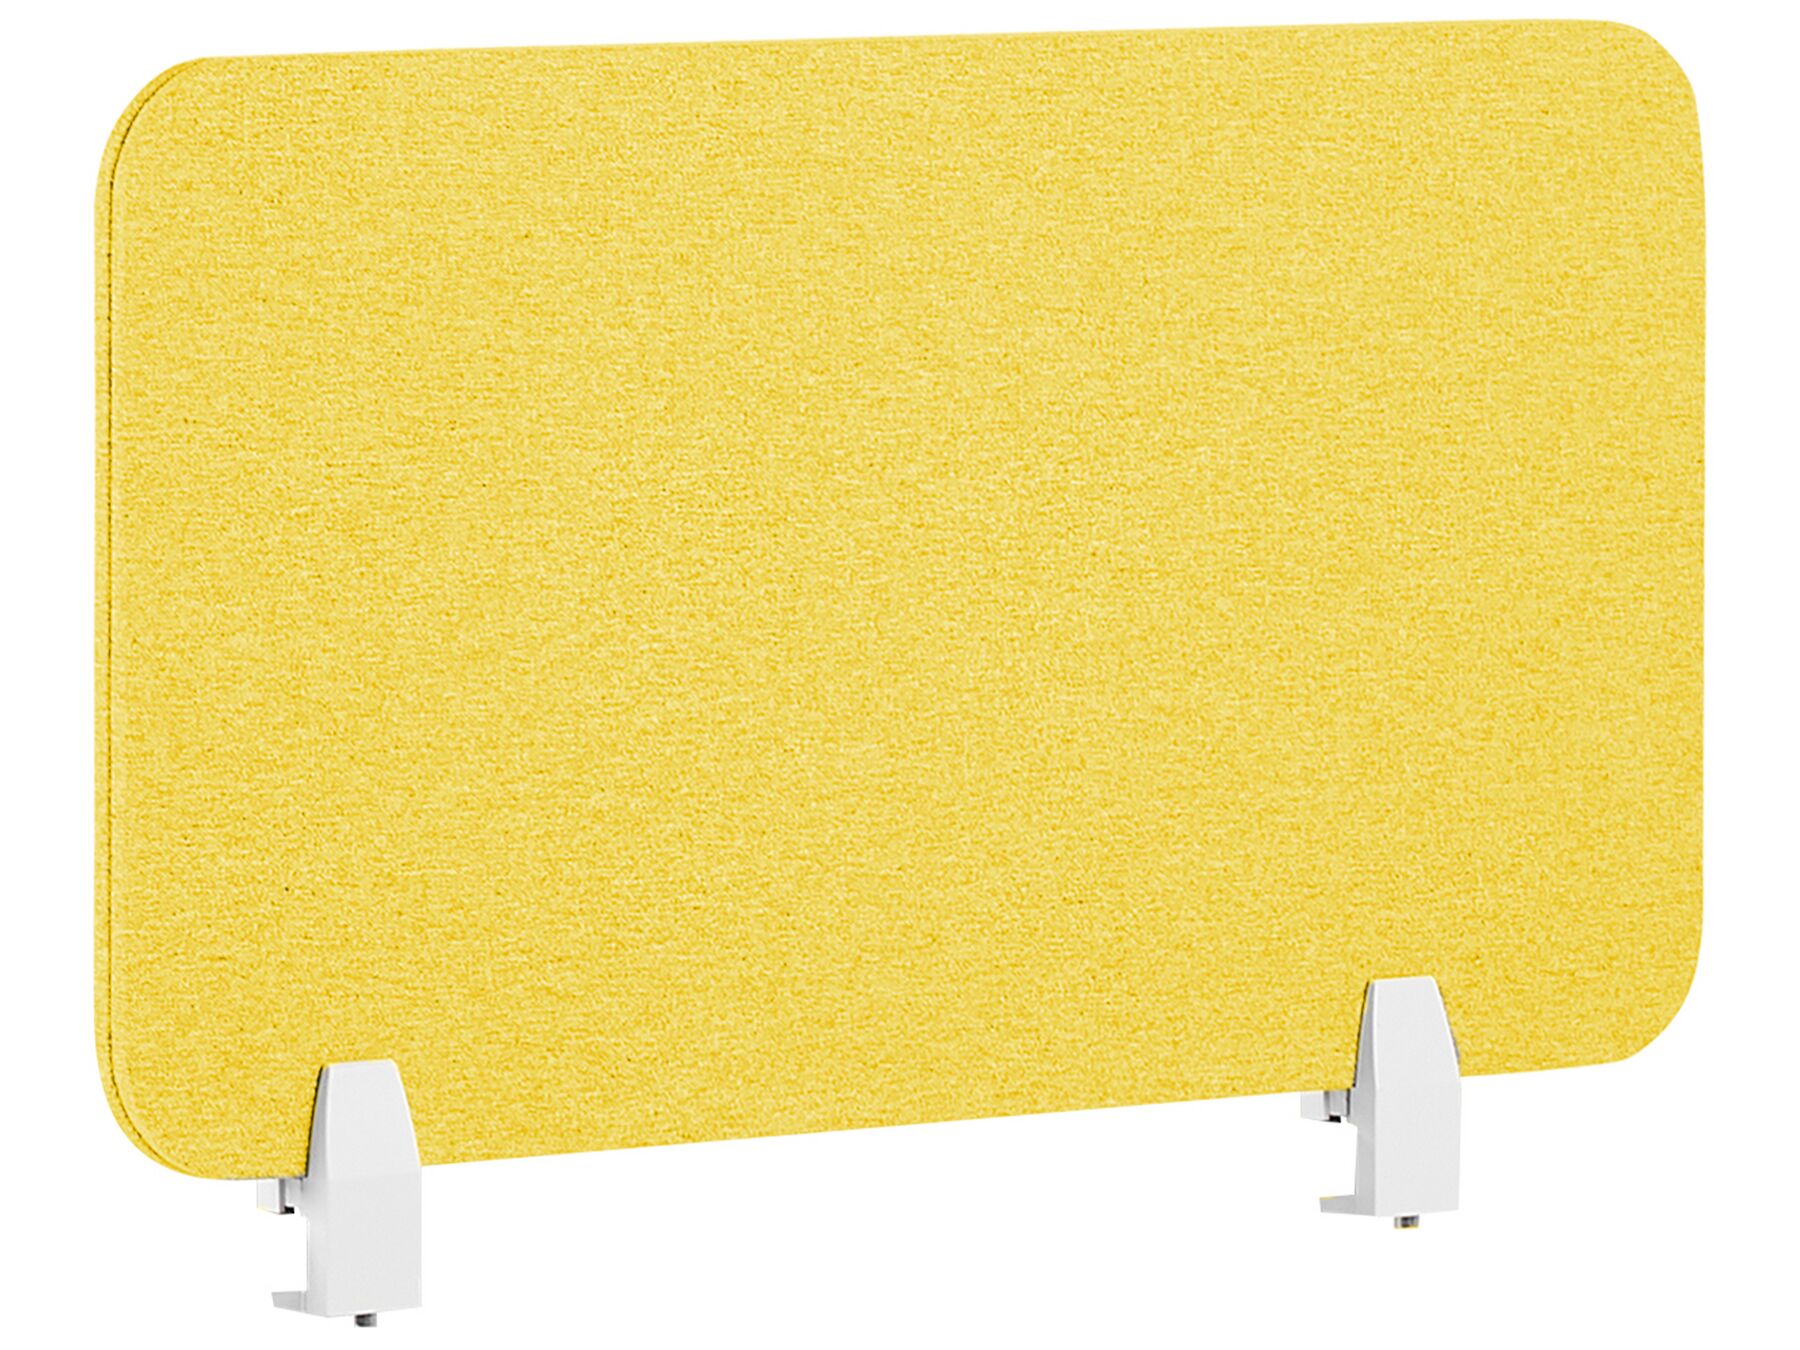 Séparateur de bureau jaune 72 x 40 cm WALLY_853059